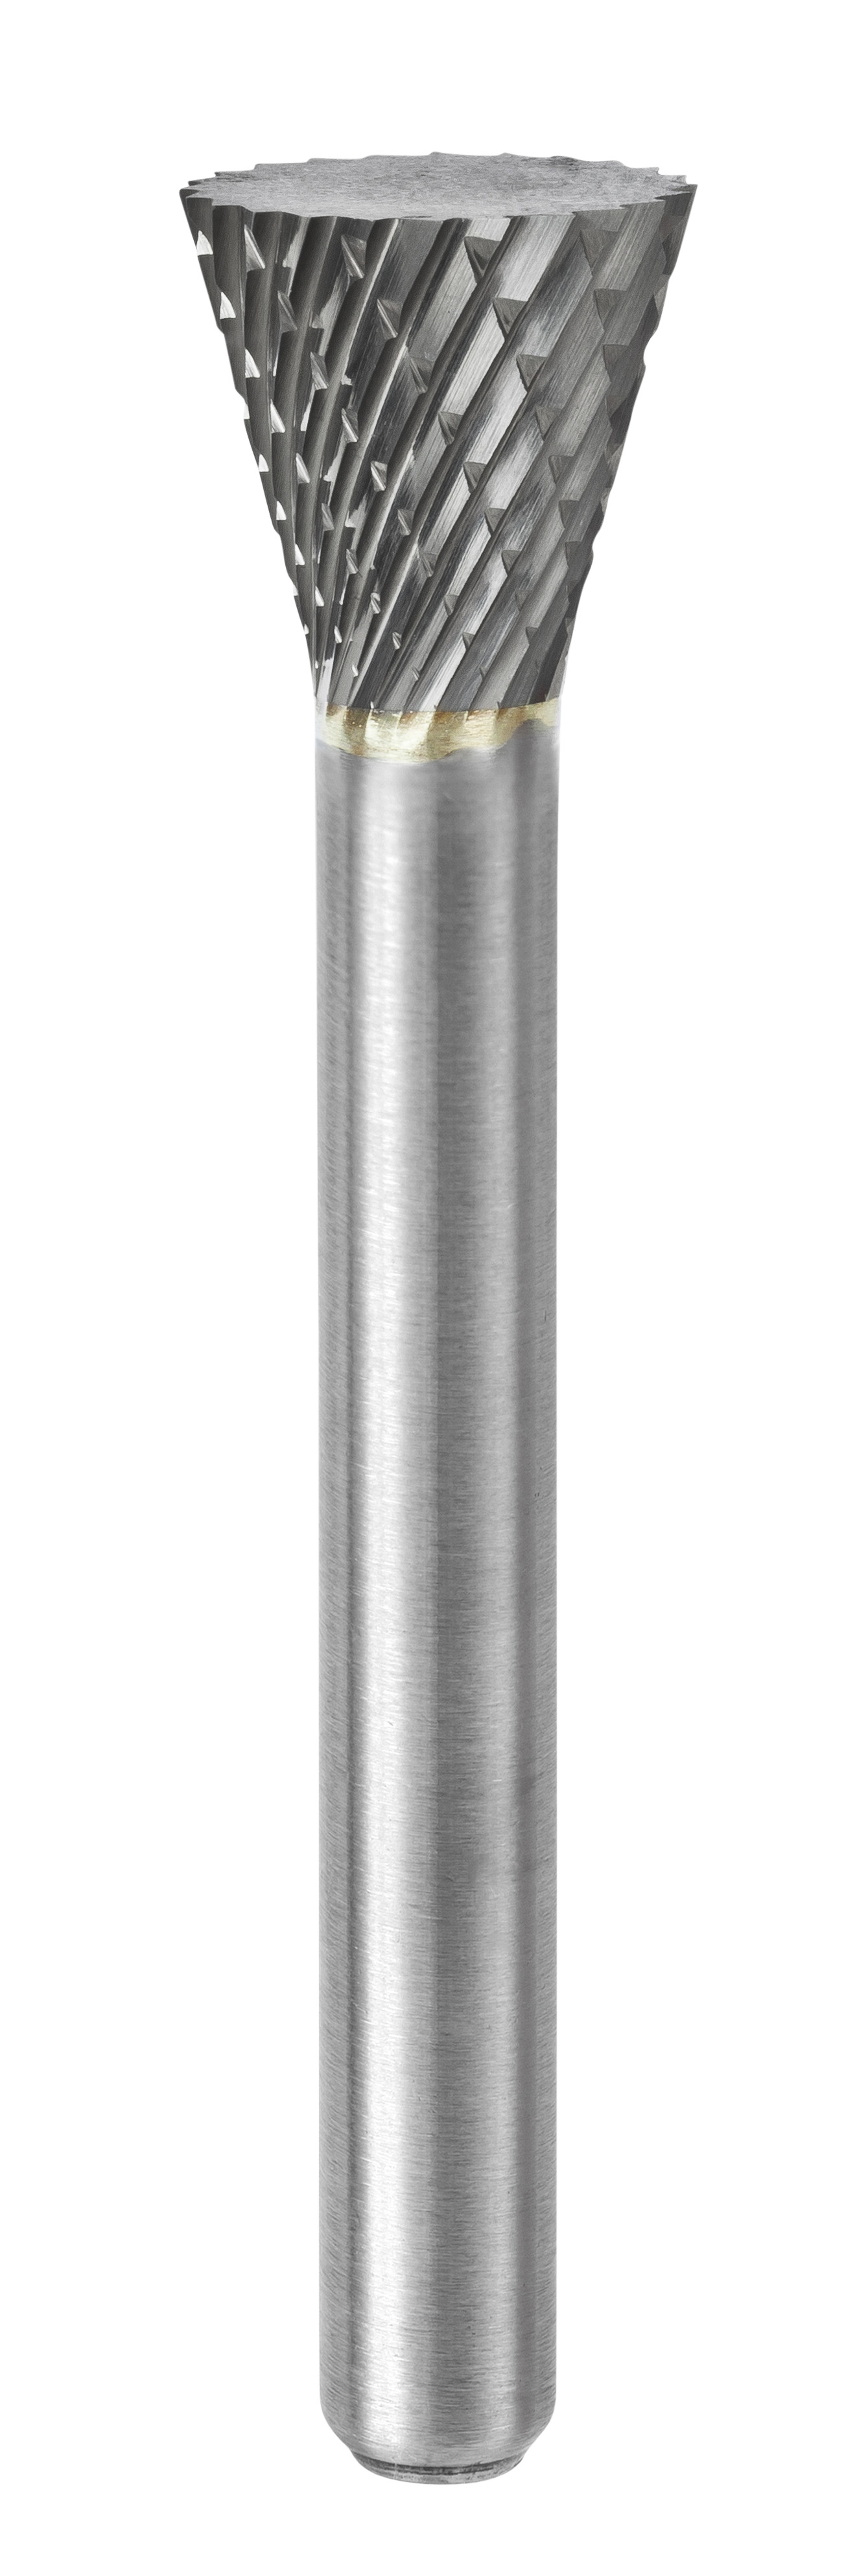 650 Fraise lime carbure cône inverse avec denture croisée Ø12,7 mm - Coupe A 